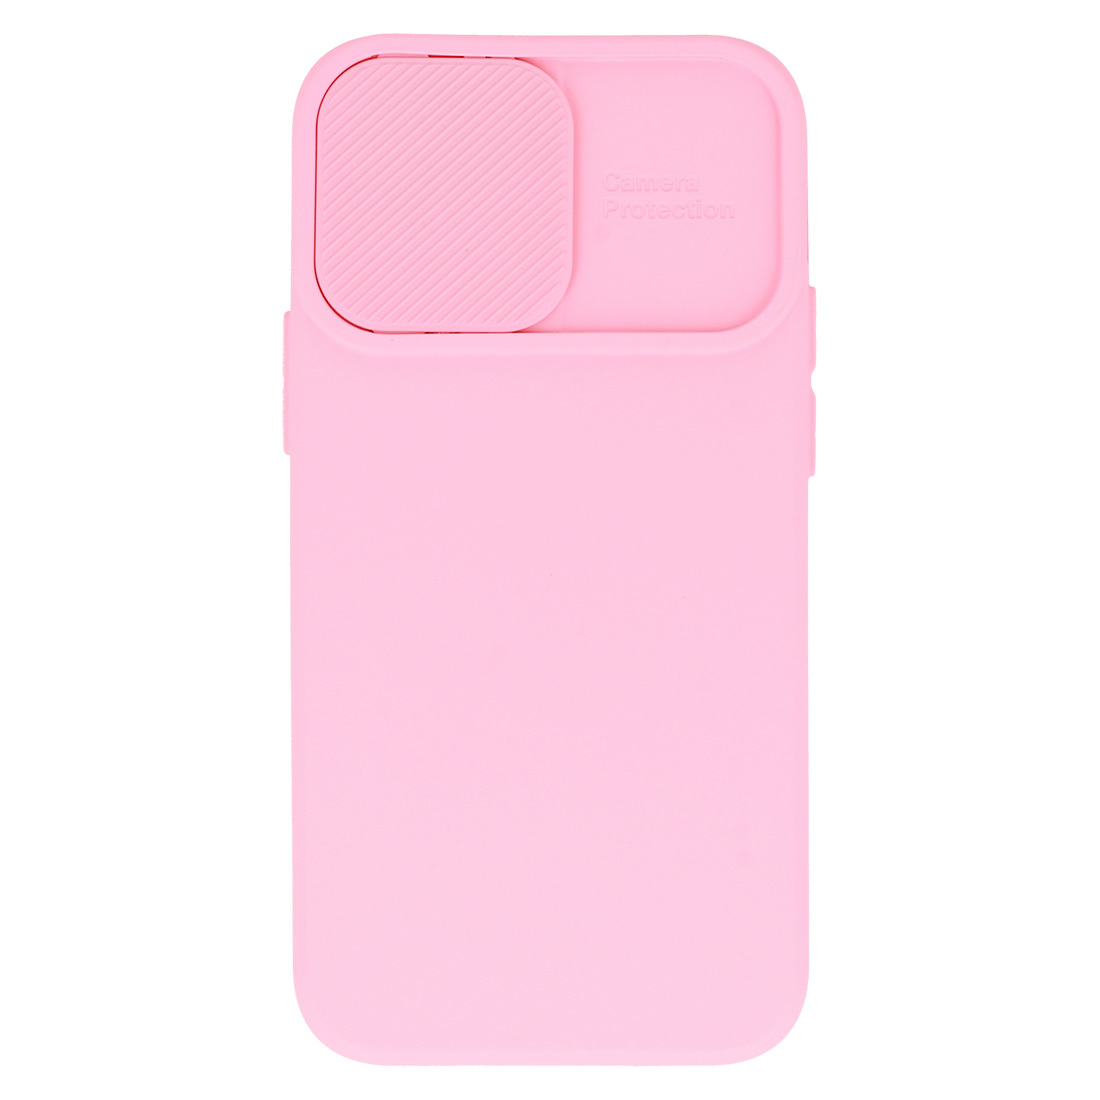 Pokrowiec etui z elastycznego TPU Camshield Soft Case jasnorowe APPLE iPhone X / 6